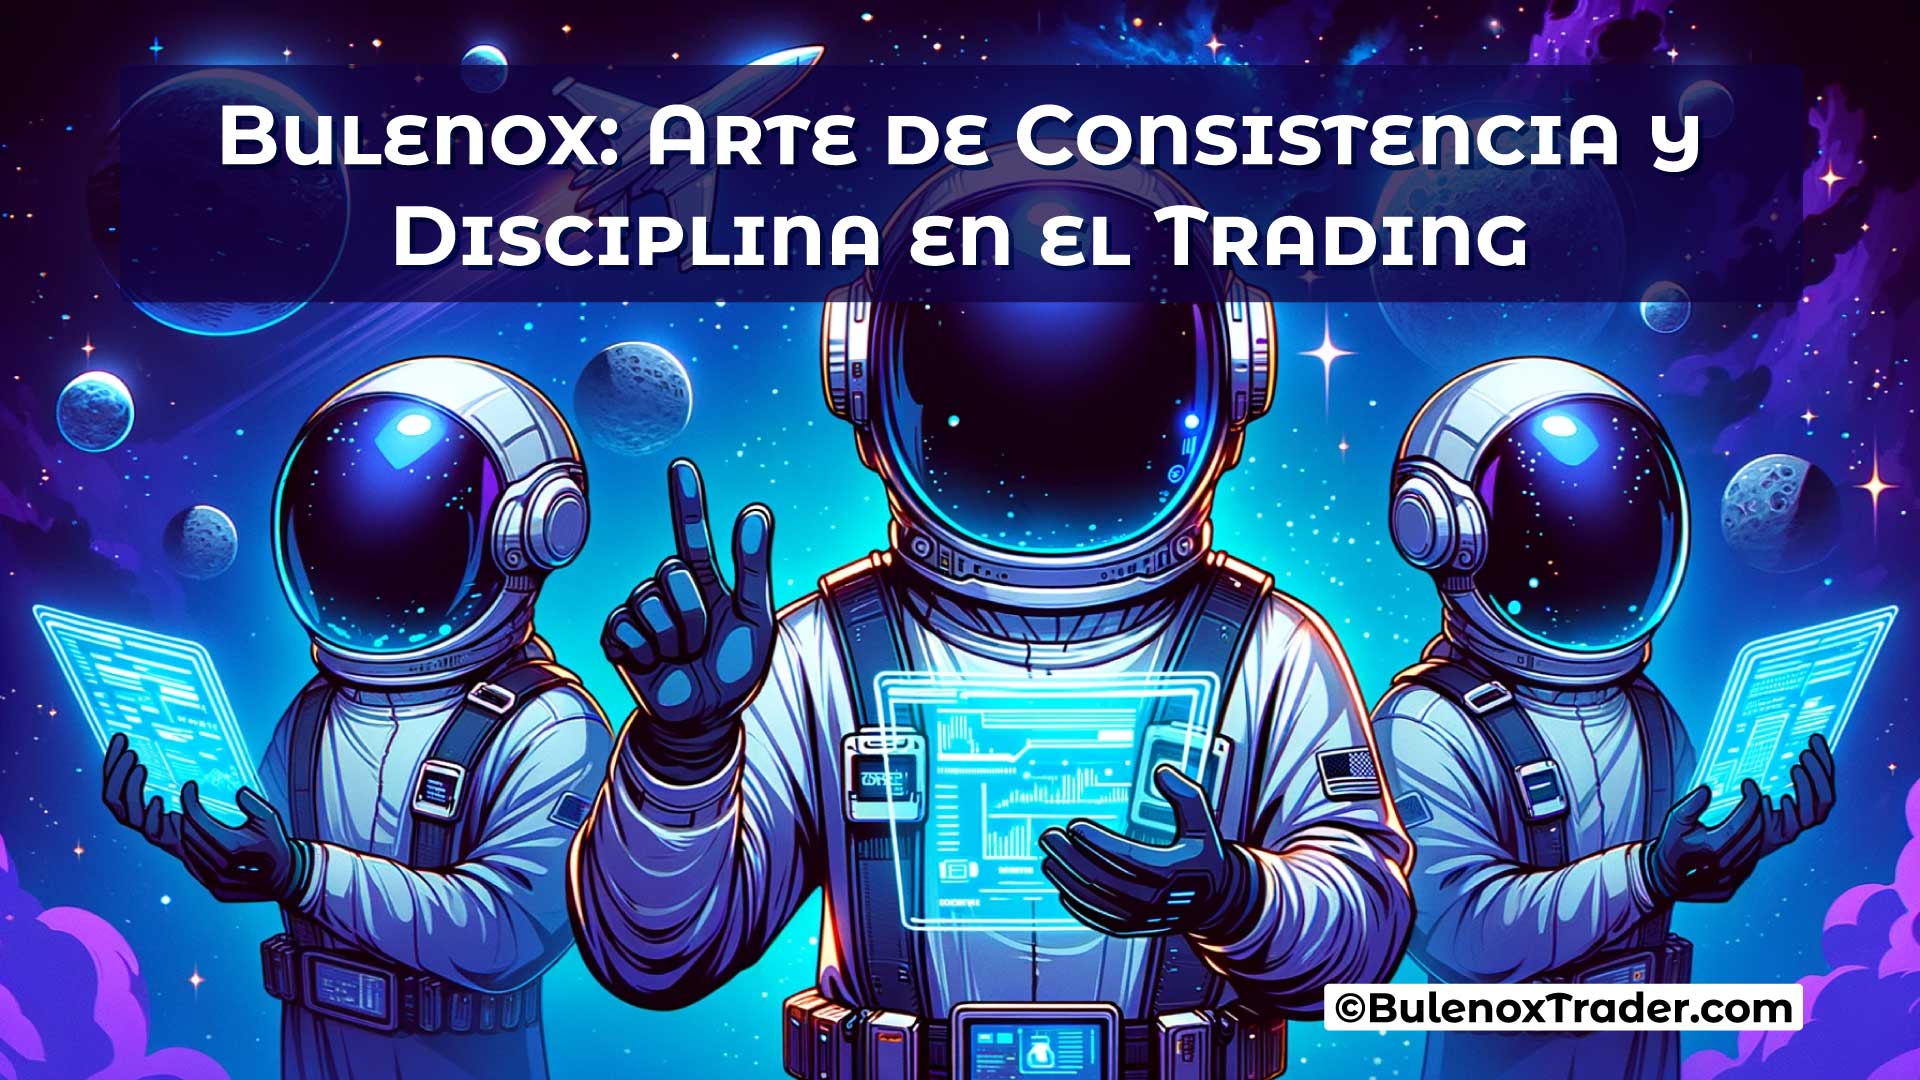 Bulenox-Arte-de-Consistencia-y-Disciplina-en-el-Trading-on-Bulenox-Trader-Website